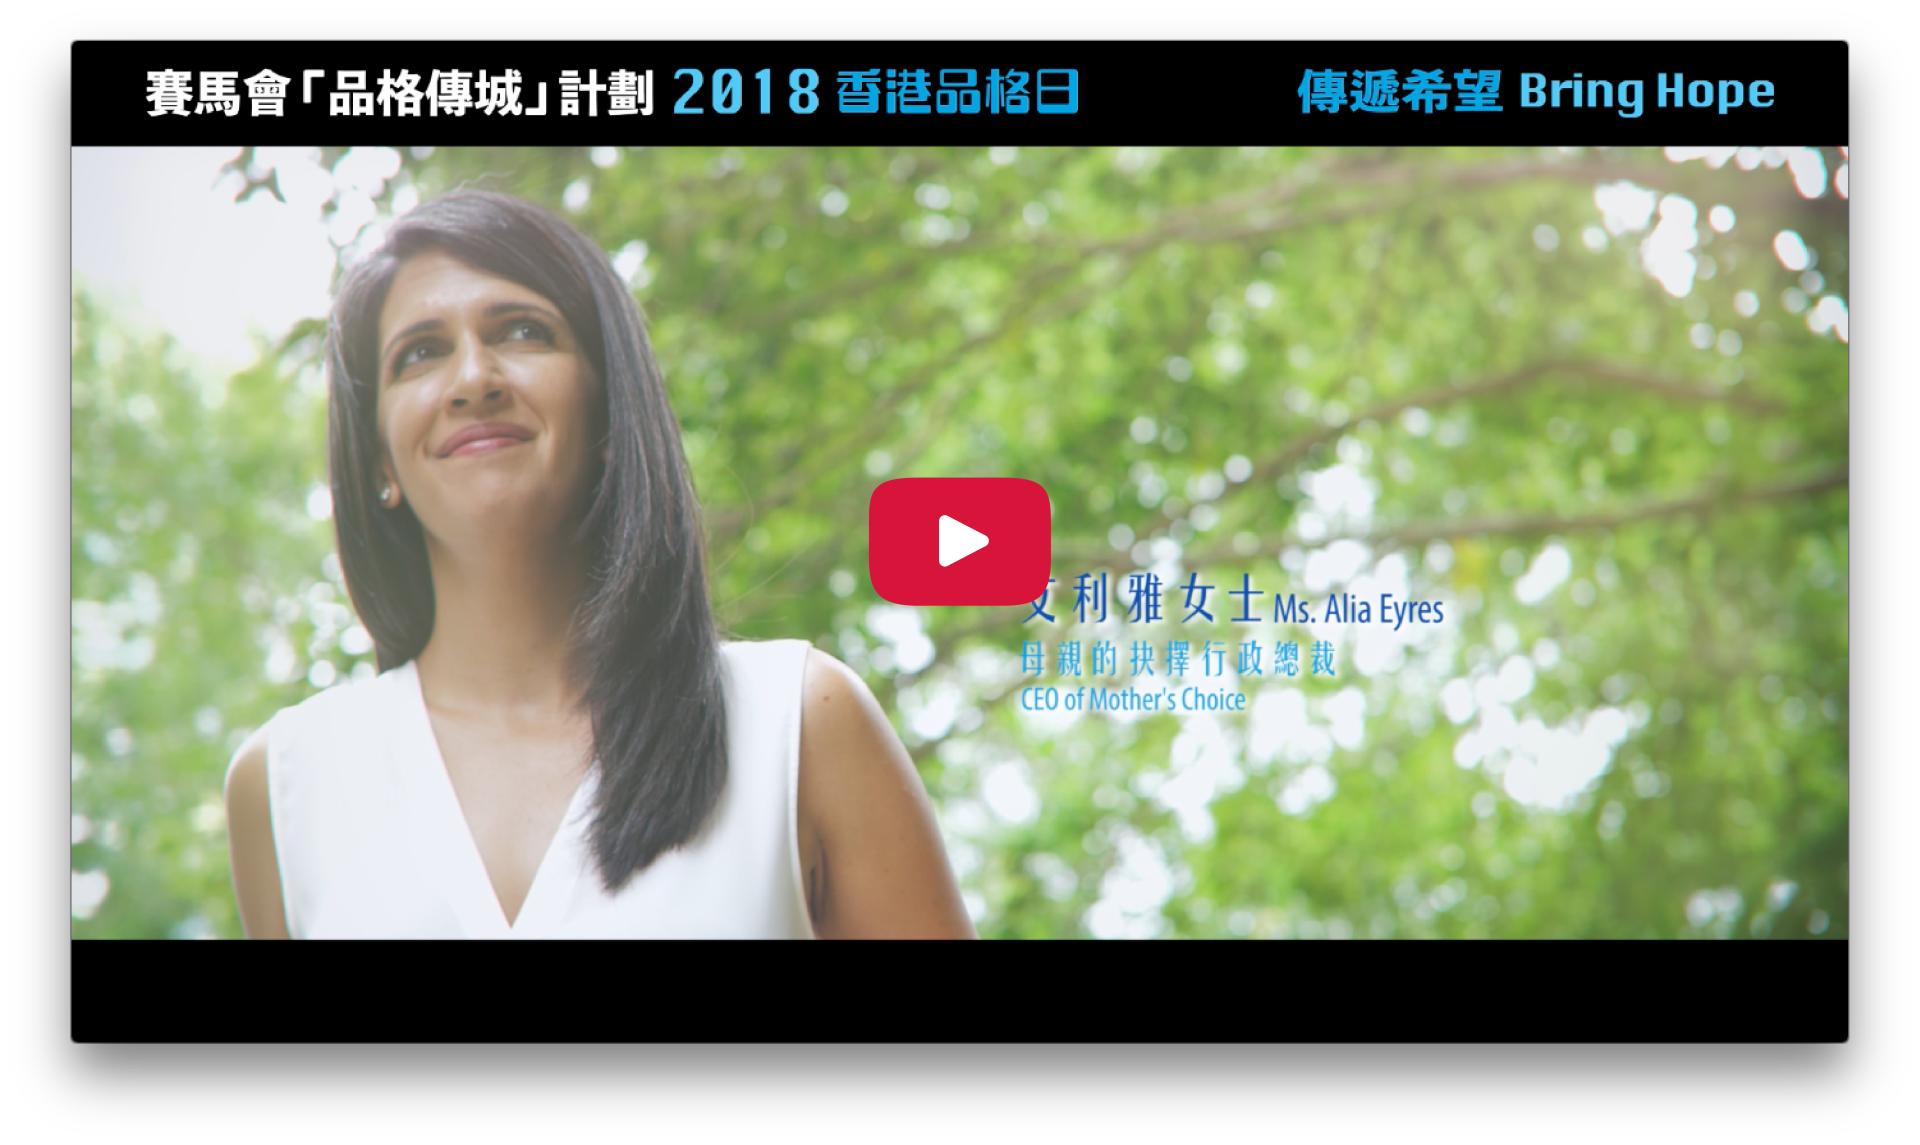 2018 Character Day Hong Kong Ambassadors - Alia Eyres